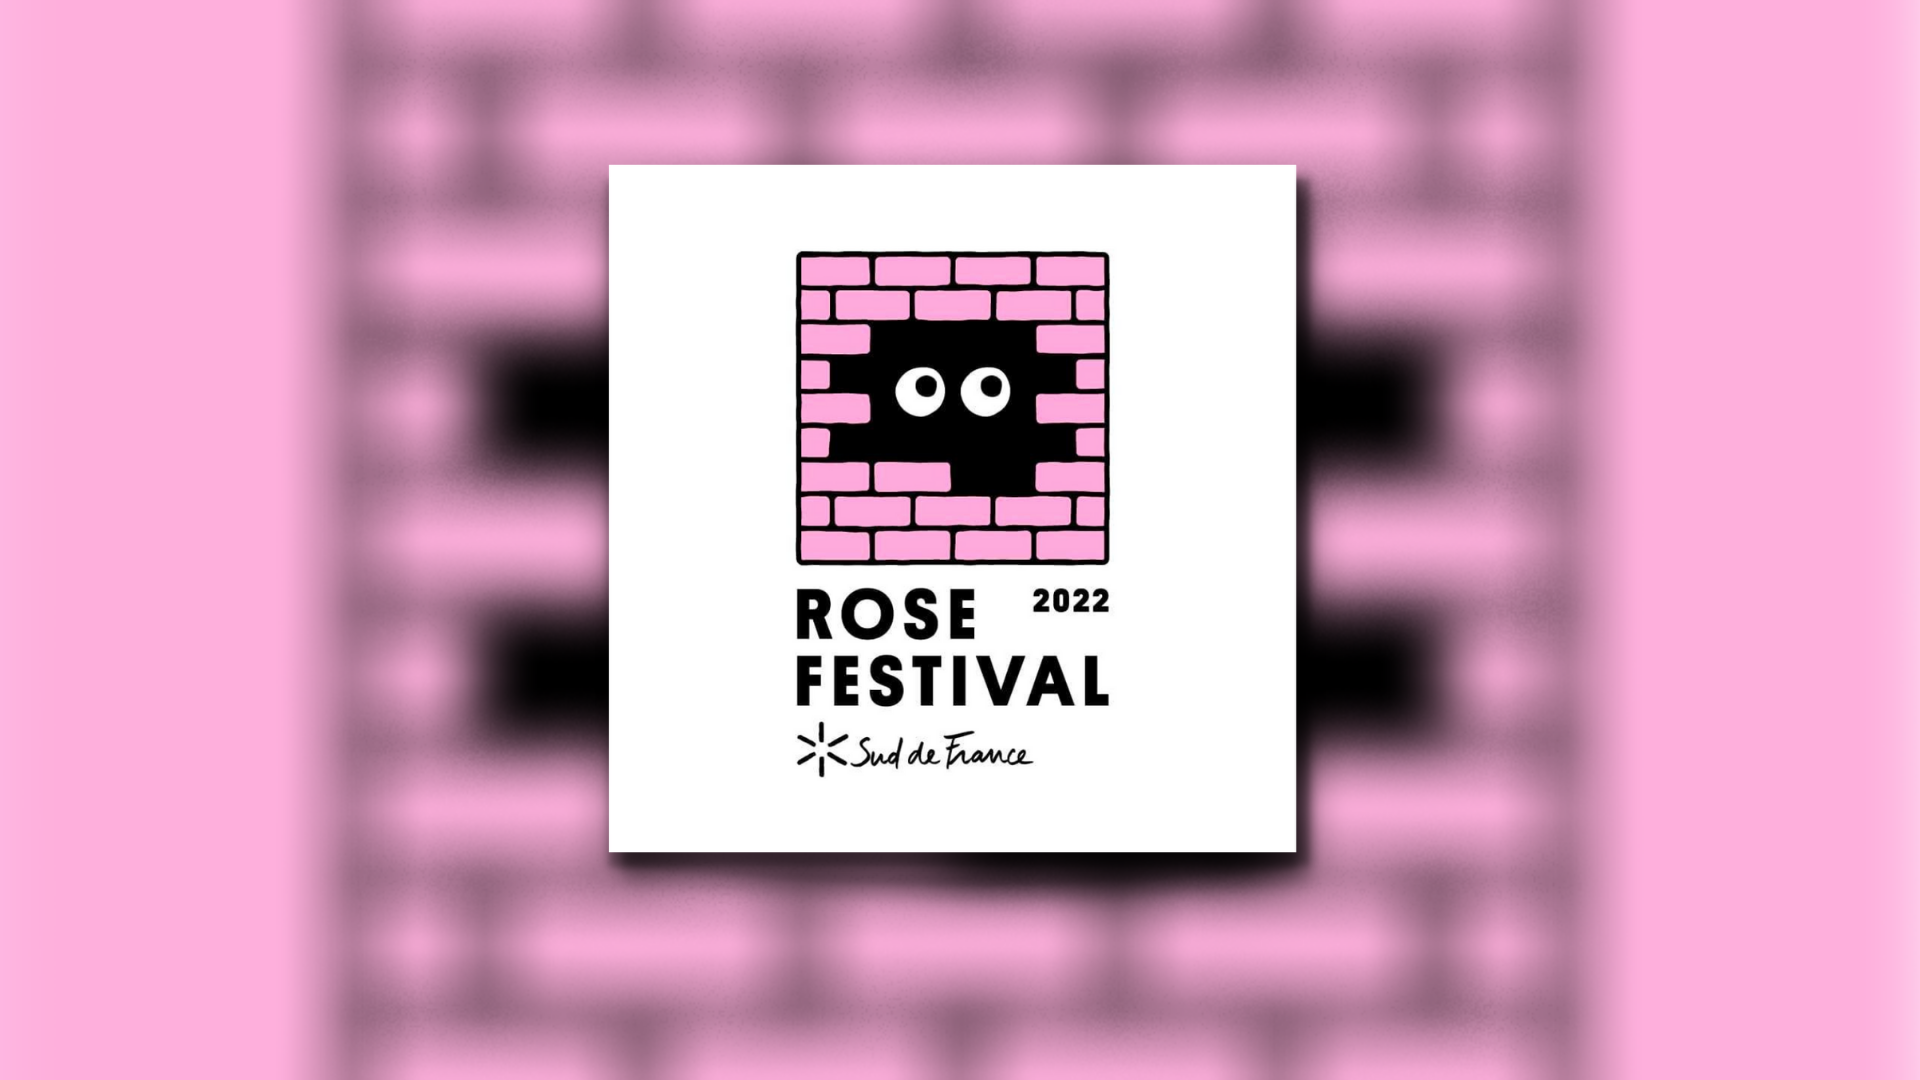 l’événement musical “le Rose Festival” s’installera au domaine d’Ariane à Mondeville les 2 et 3 septembre 2022.